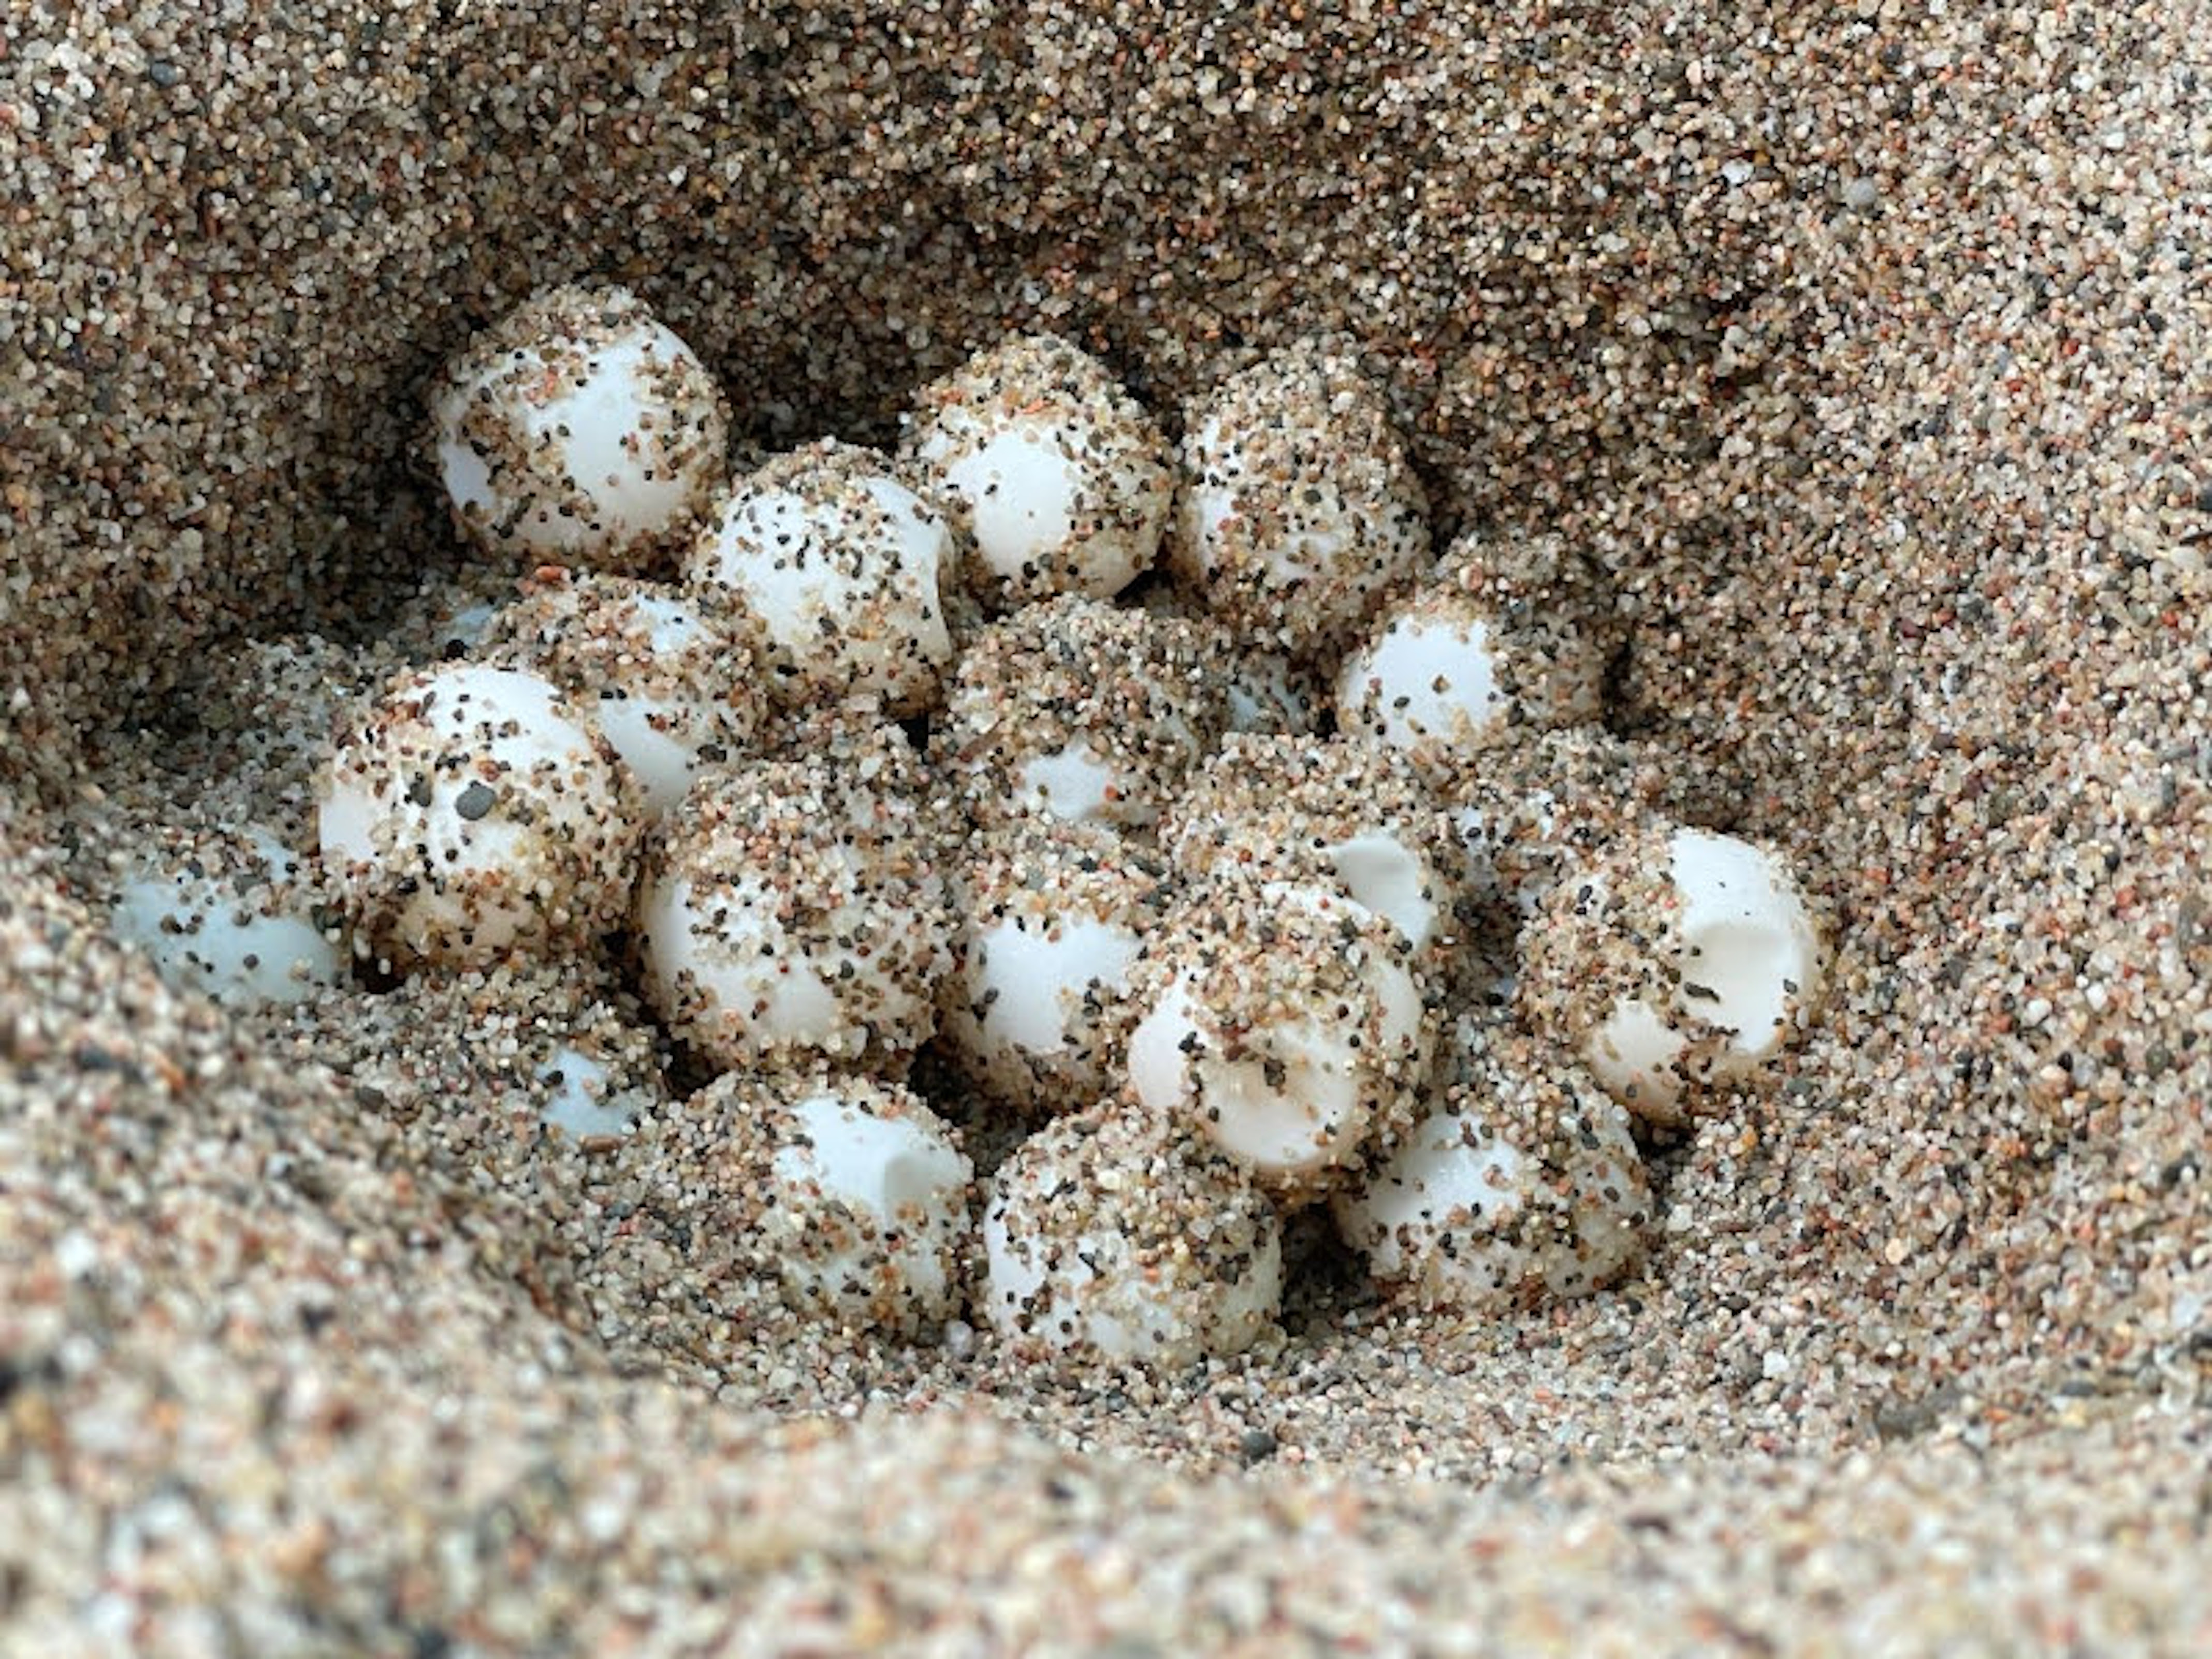 Loggerhead sea turtle eggs found on Sa Riera beach in Begur